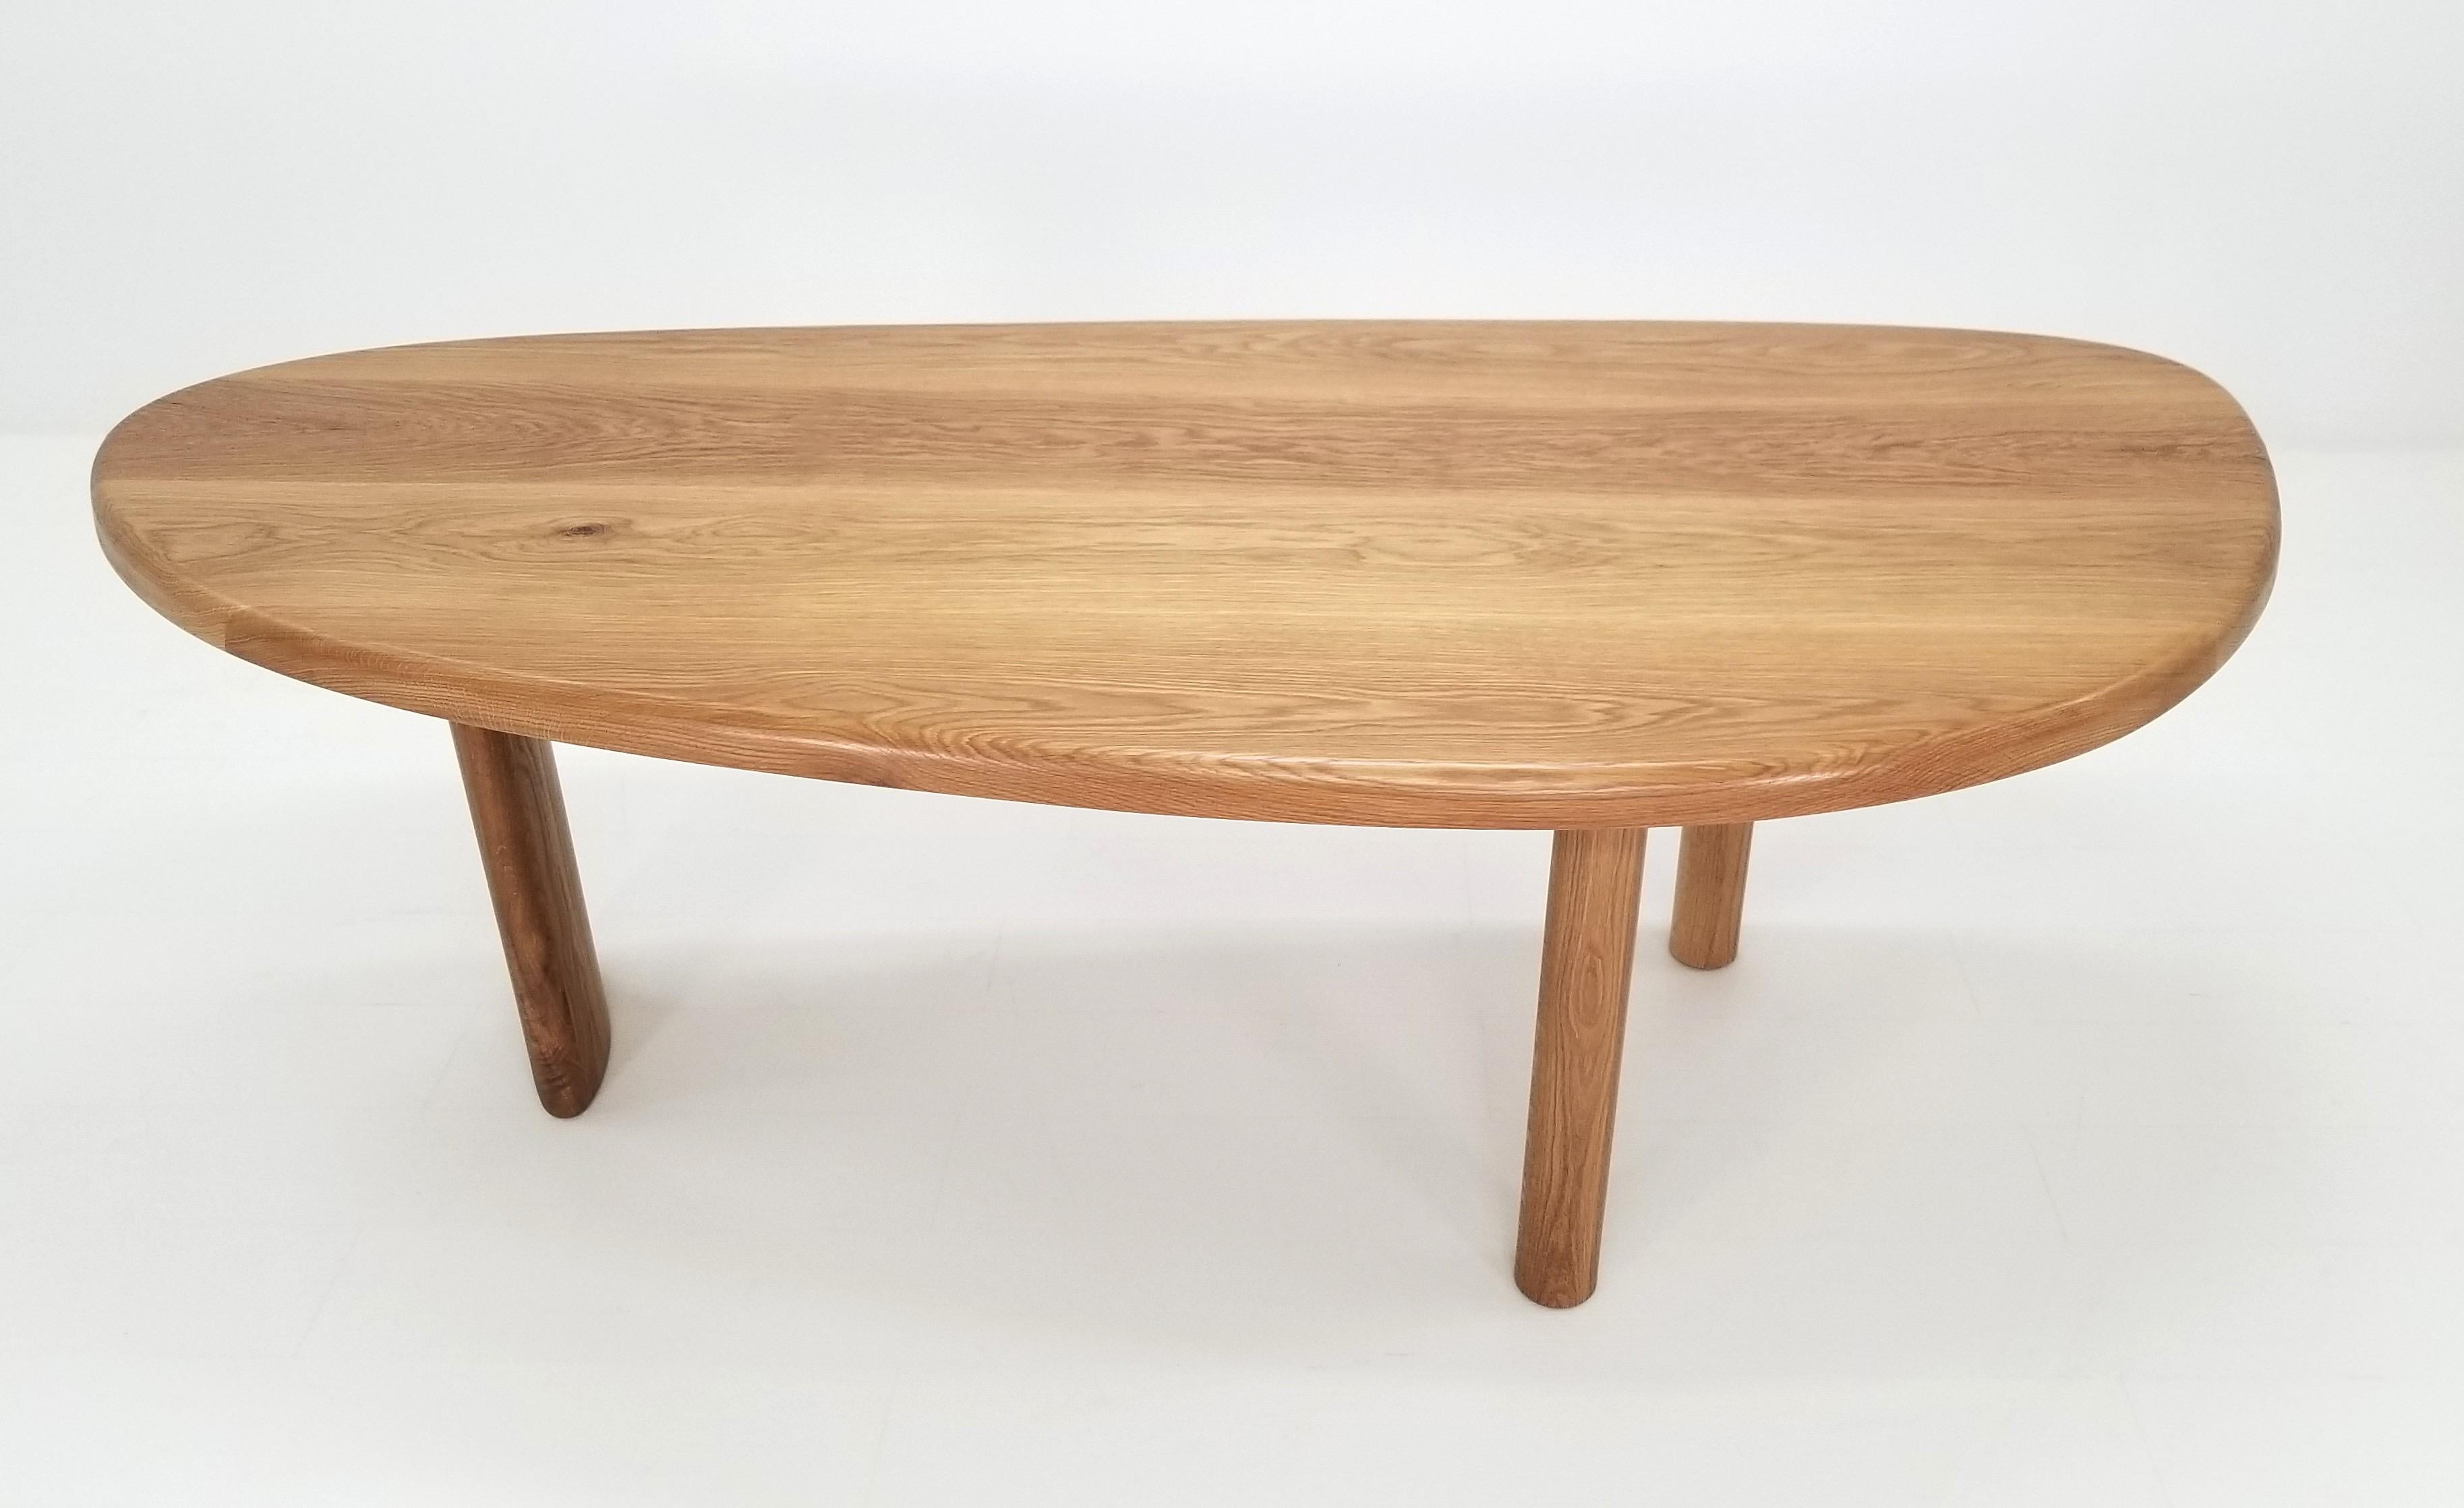 Dieser Freiform-Tisch, inspiriert von Charlotte Perriands Free Form Dining Table, ist aus hochwertigem amerikanischem FAS-Hartholz gefertigt. Das Hartwachs-Öl-Finish verleiht der Weißeiche einen schönen Goldton. Dieses Design zeichnet sich durch